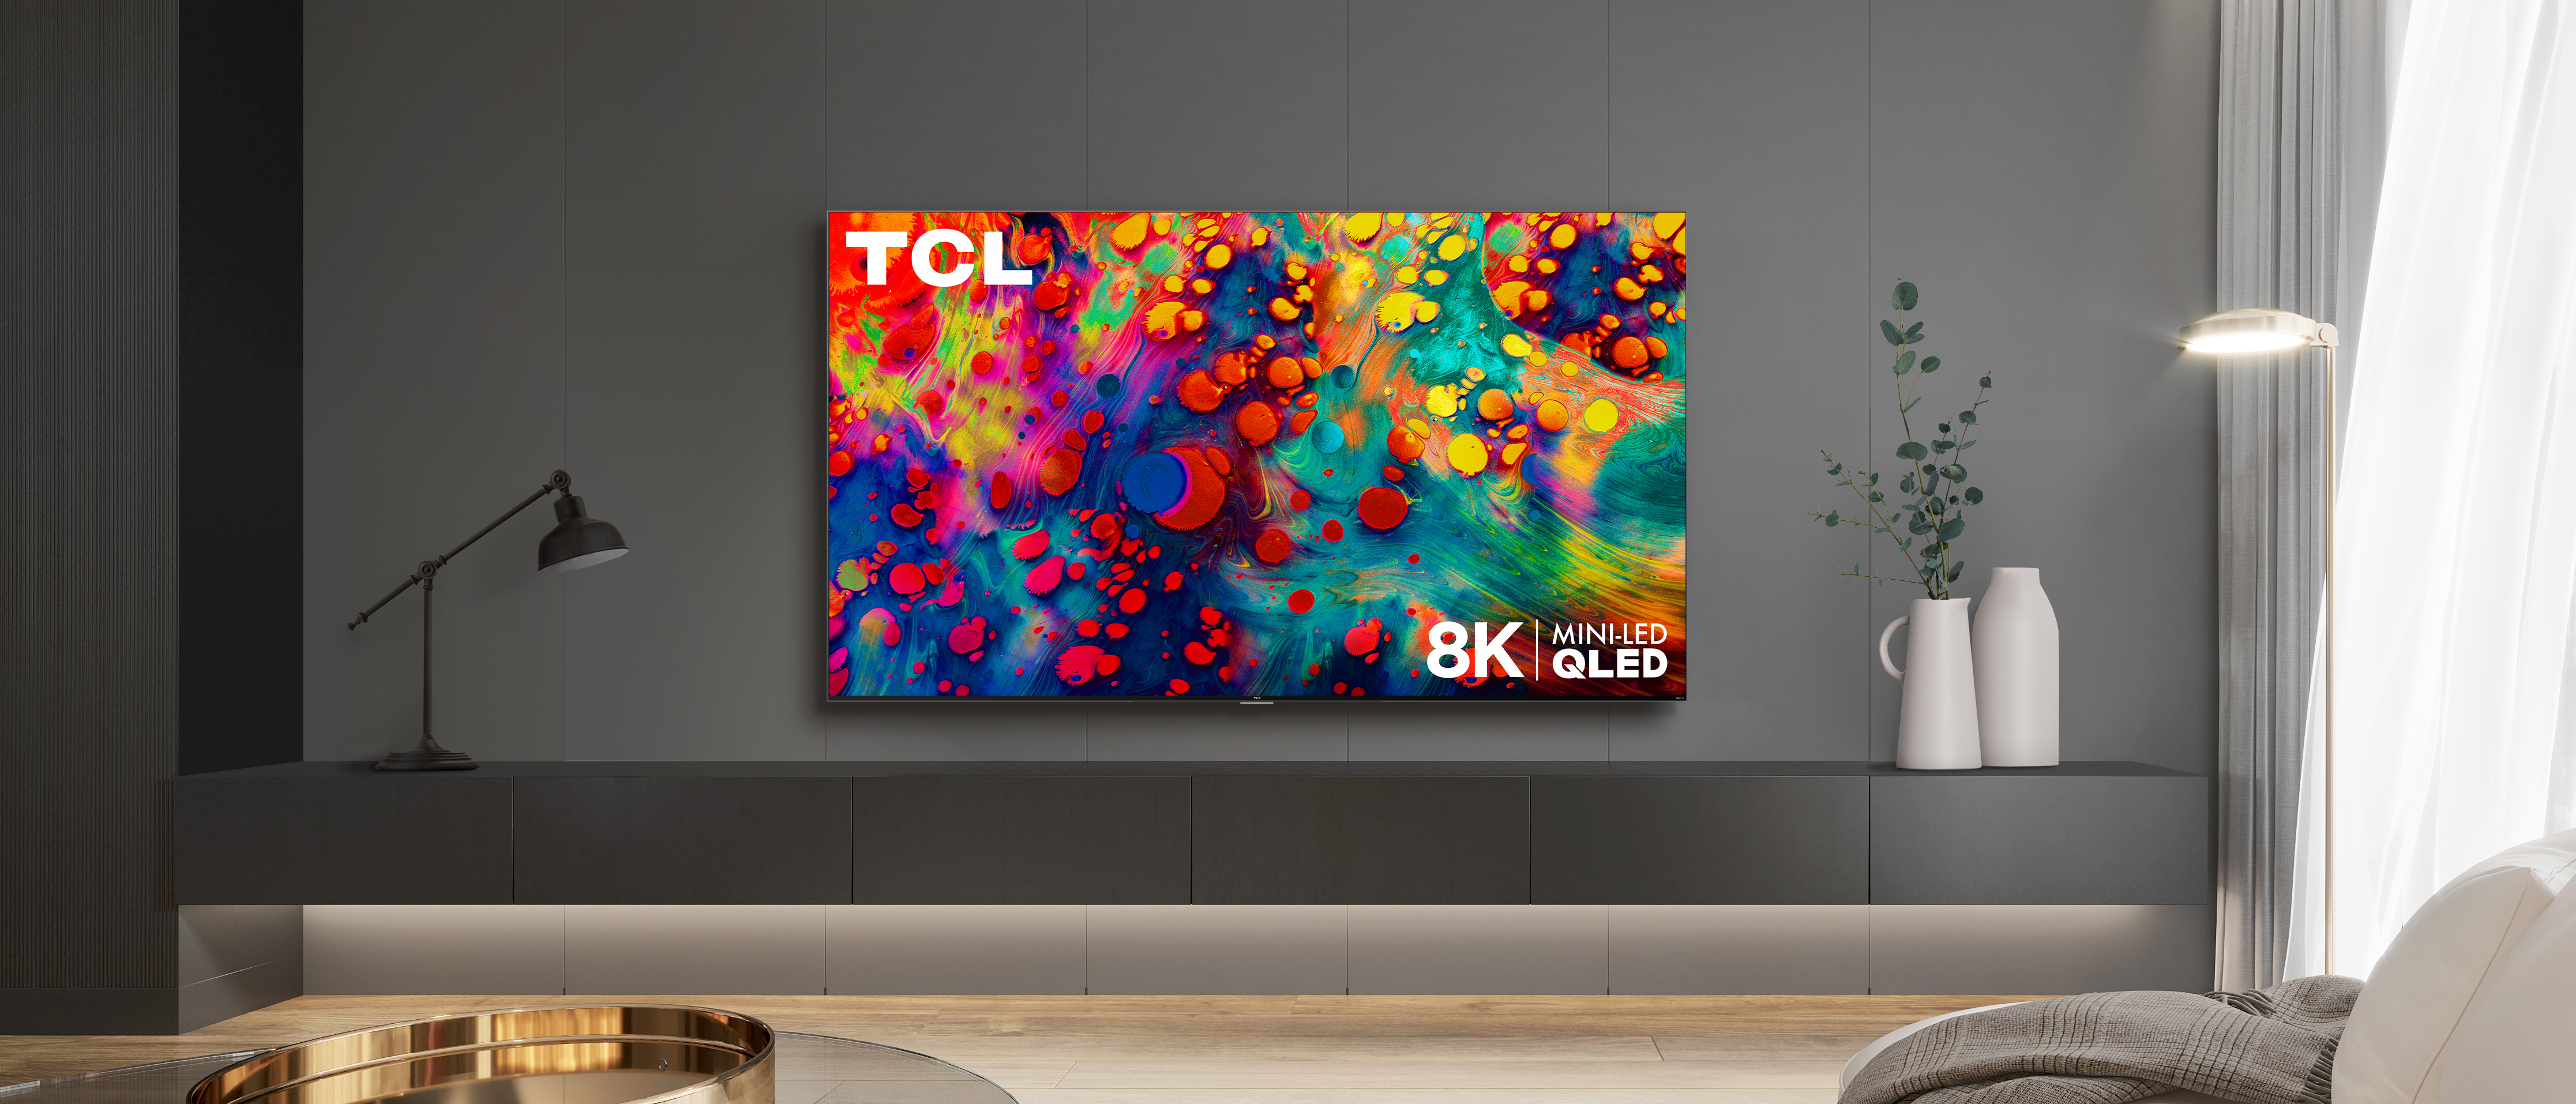 Телевизор tcl 50 qled. TCL Mini-led TV. TCL QLED. Телевизор ТСЛ мини лед.